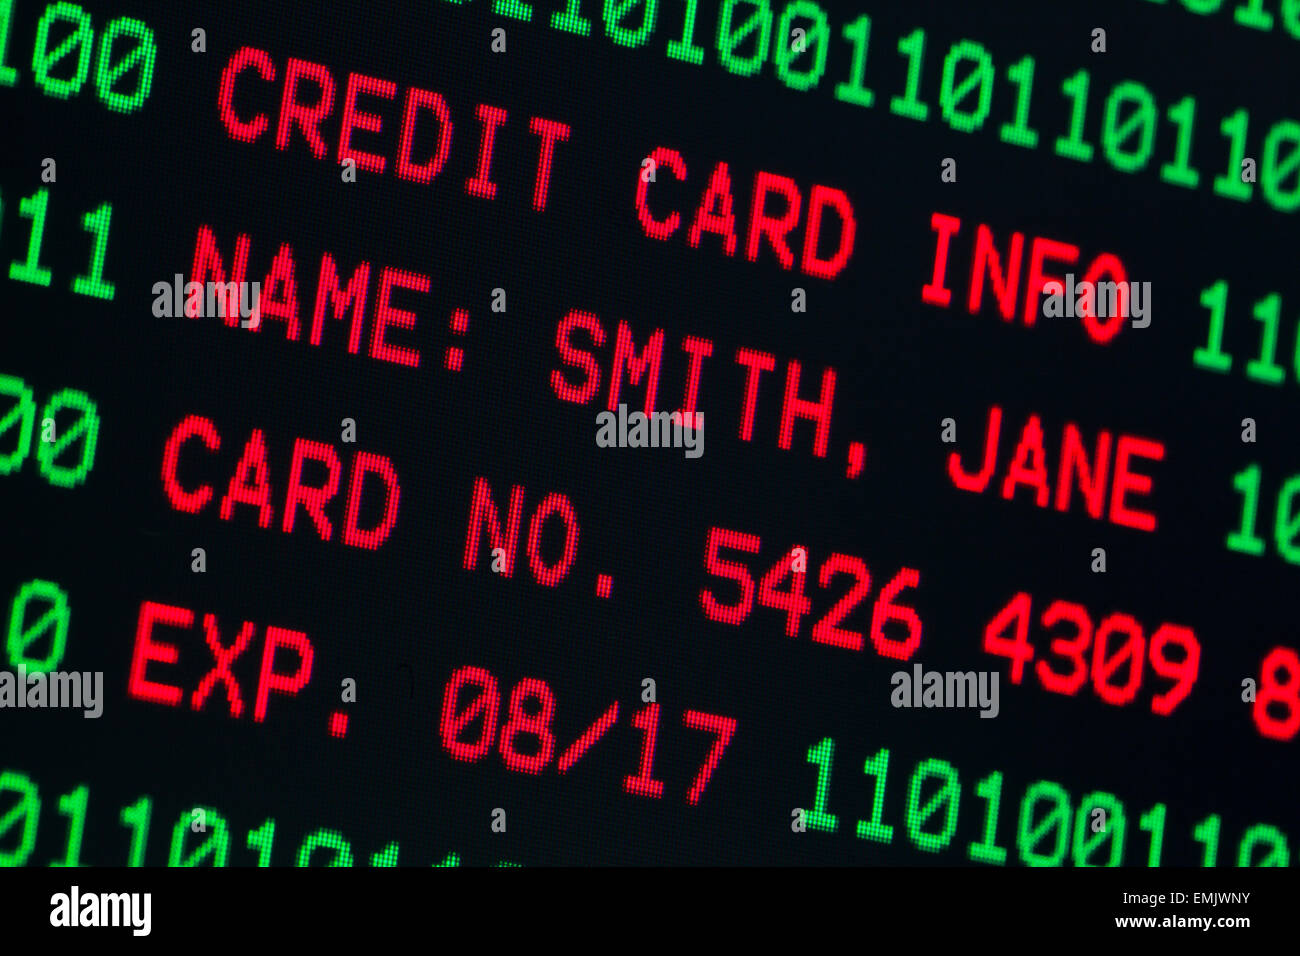 Le informazioni sulla carta di credito sullo schermo del computer (informazione è fittizio) Foto Stock